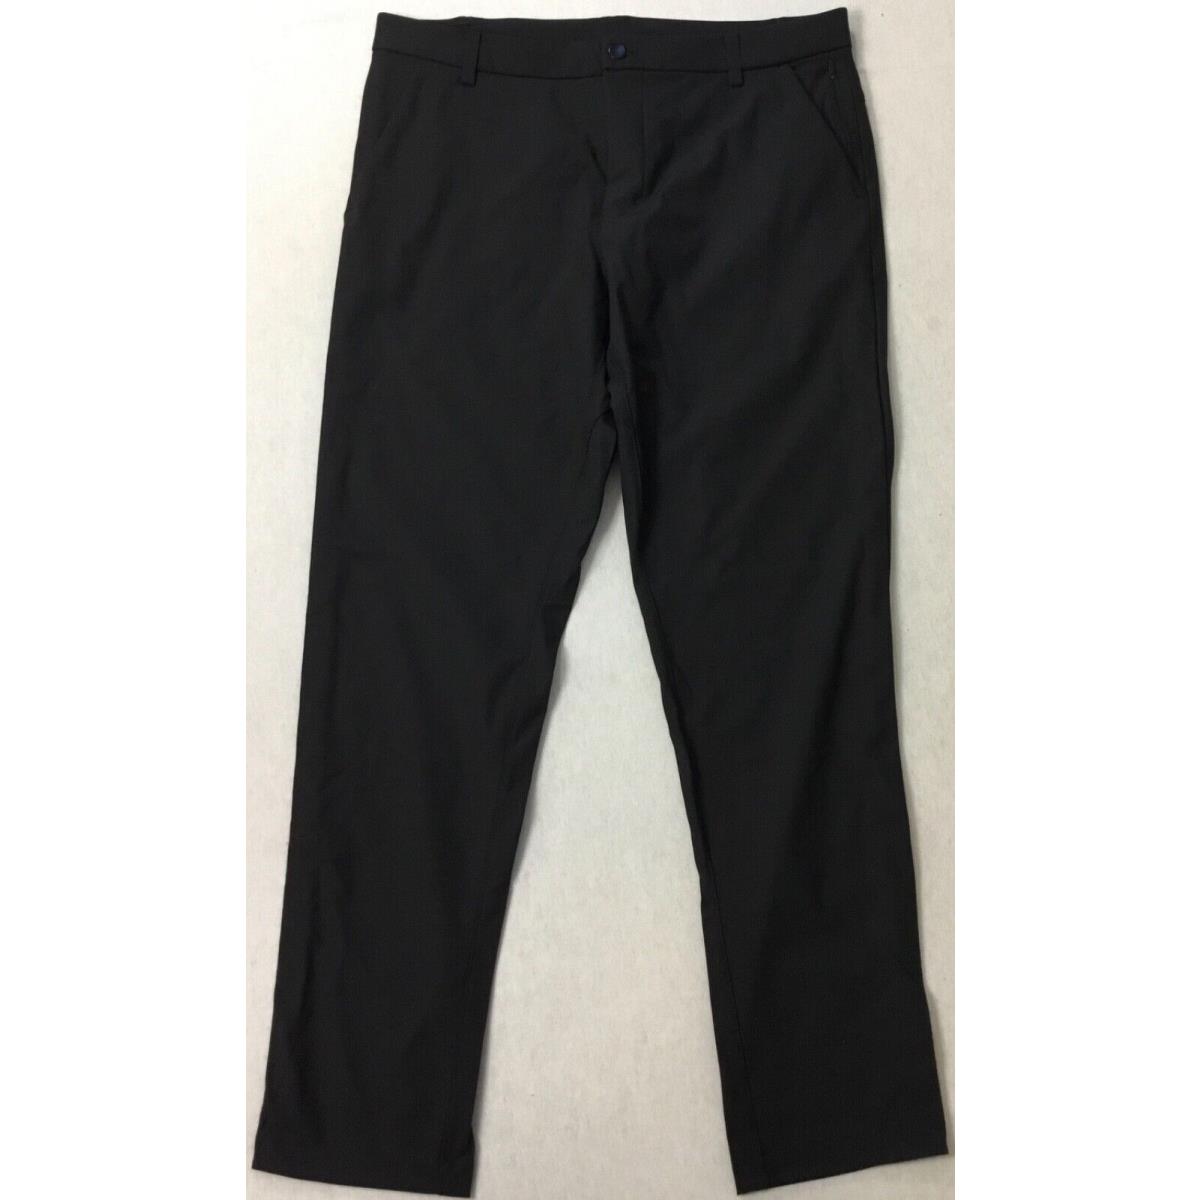 Lululemon Men s Pants Commission Pant Classic 32 Length Black LM5710S Size 31